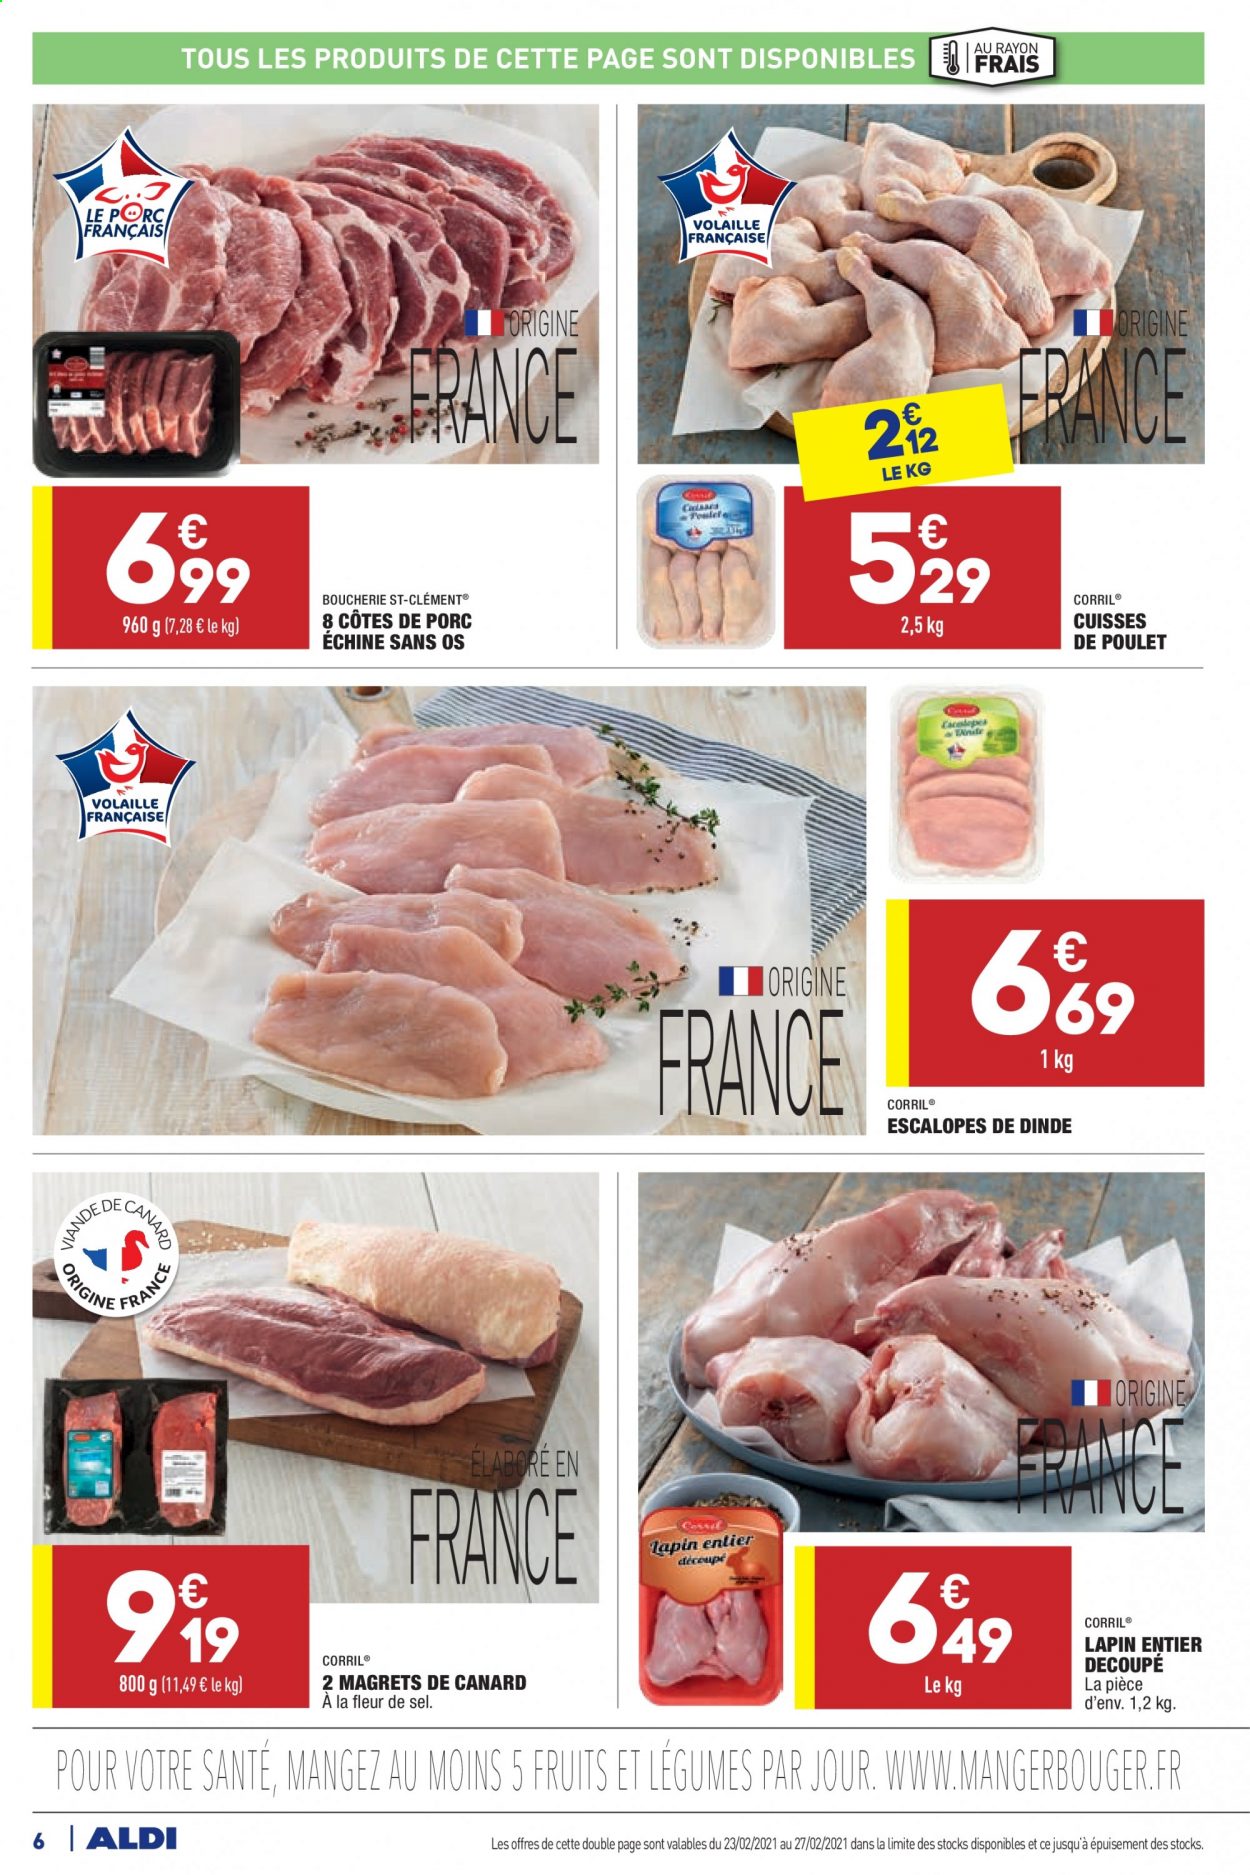 thumbnail - Catalogue ALDI - 23/02/2021 - 01/03/2021 - Produits soldés - côtes de porc, côtes de porc échine, escalope, viande de porc, cuisses de poulet, viande de poulet, viande de dinde, escalope de dinde, lapin entier, viande de lapin. Page 6.